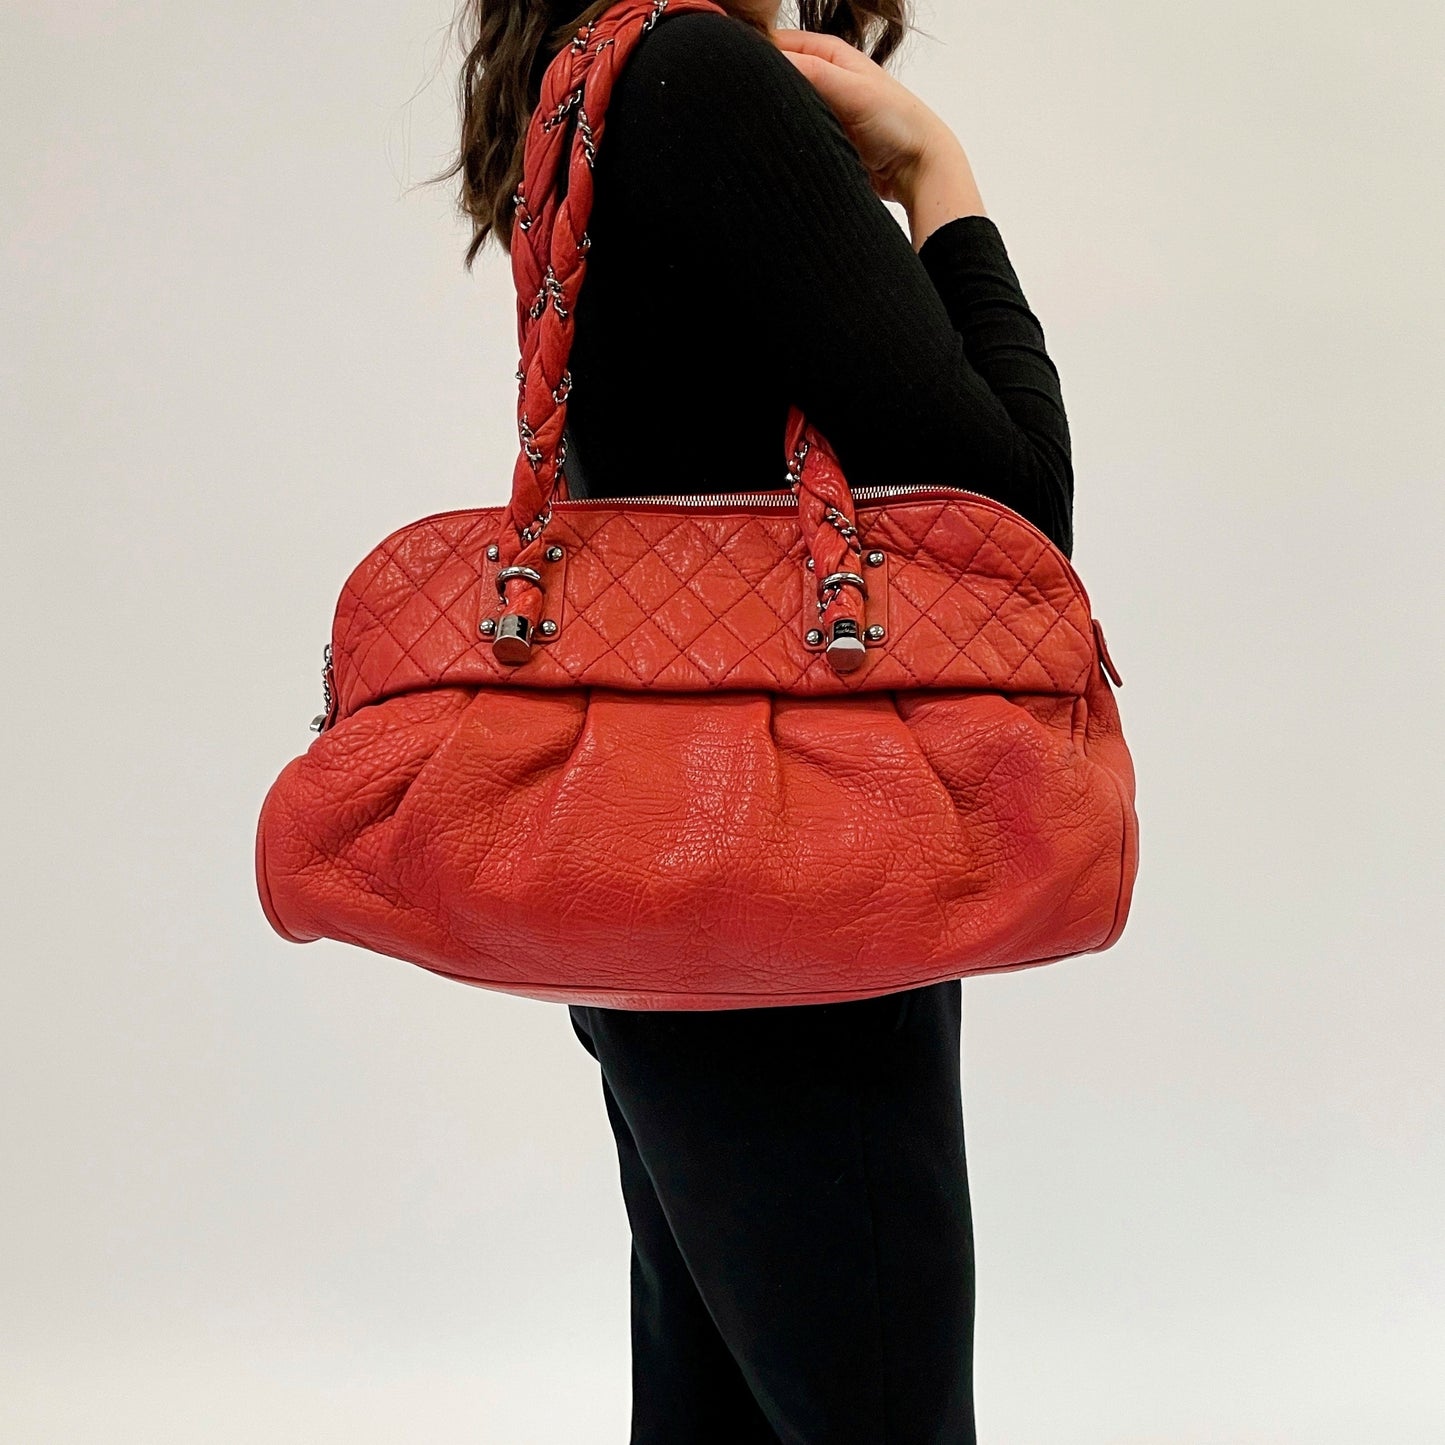 Chanel Lady Braid Large Shoulder Bag Red